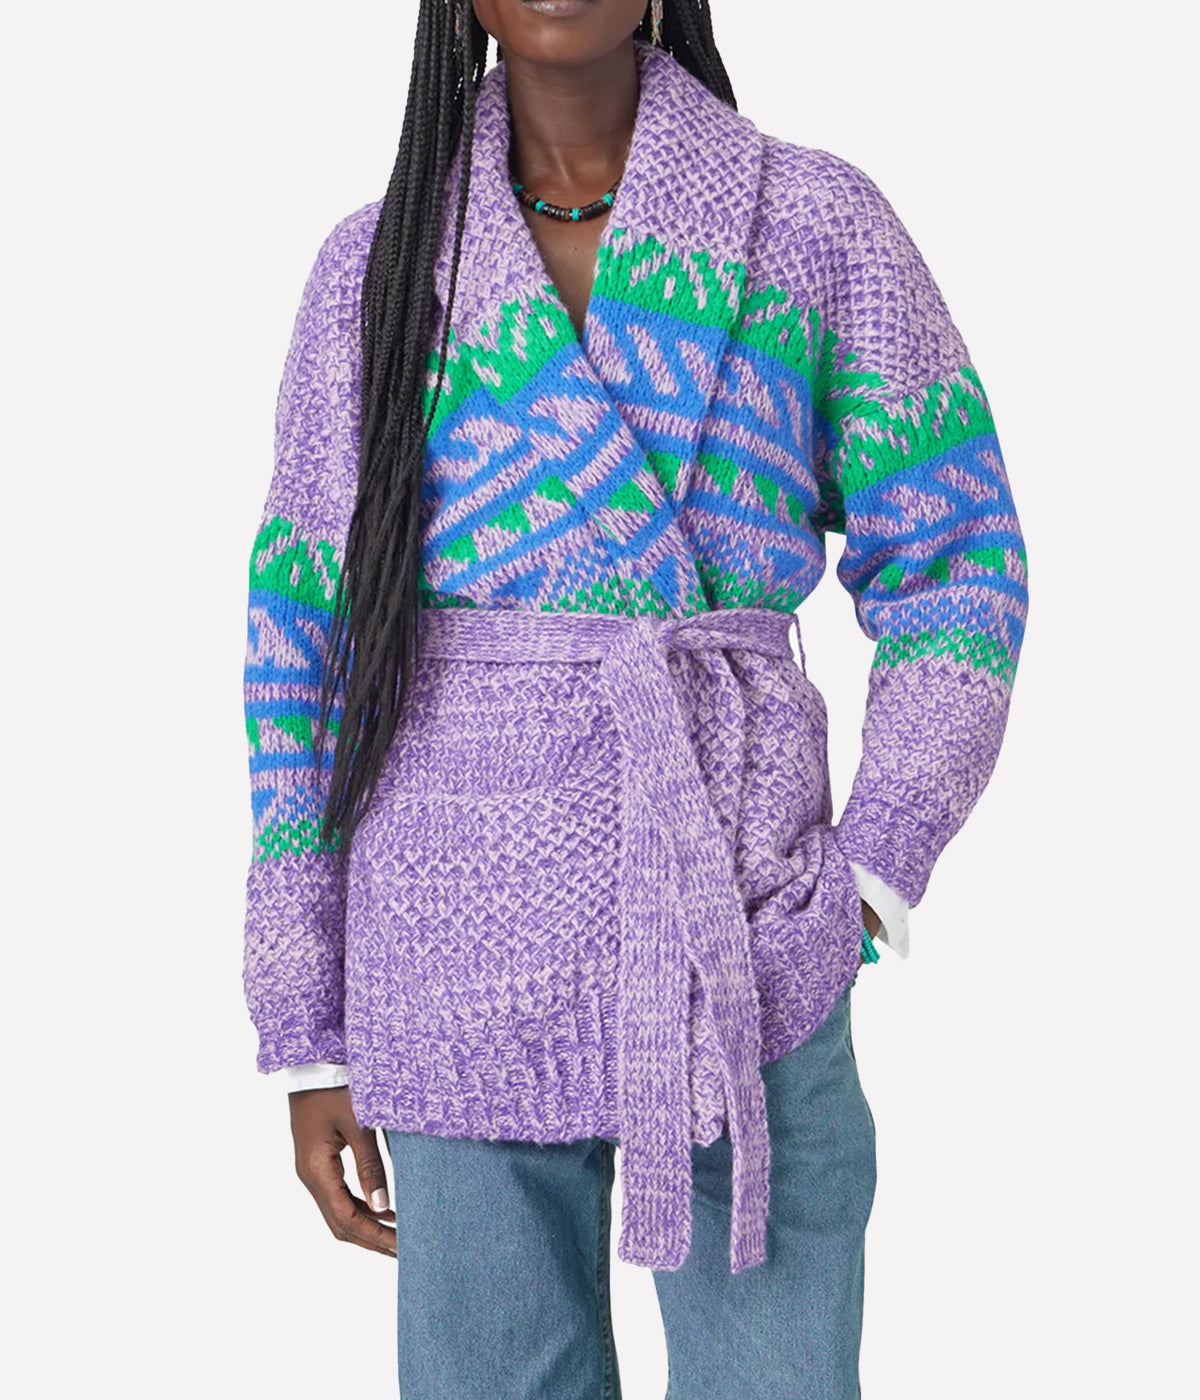 Carmella Cardigan Sweater in Iris